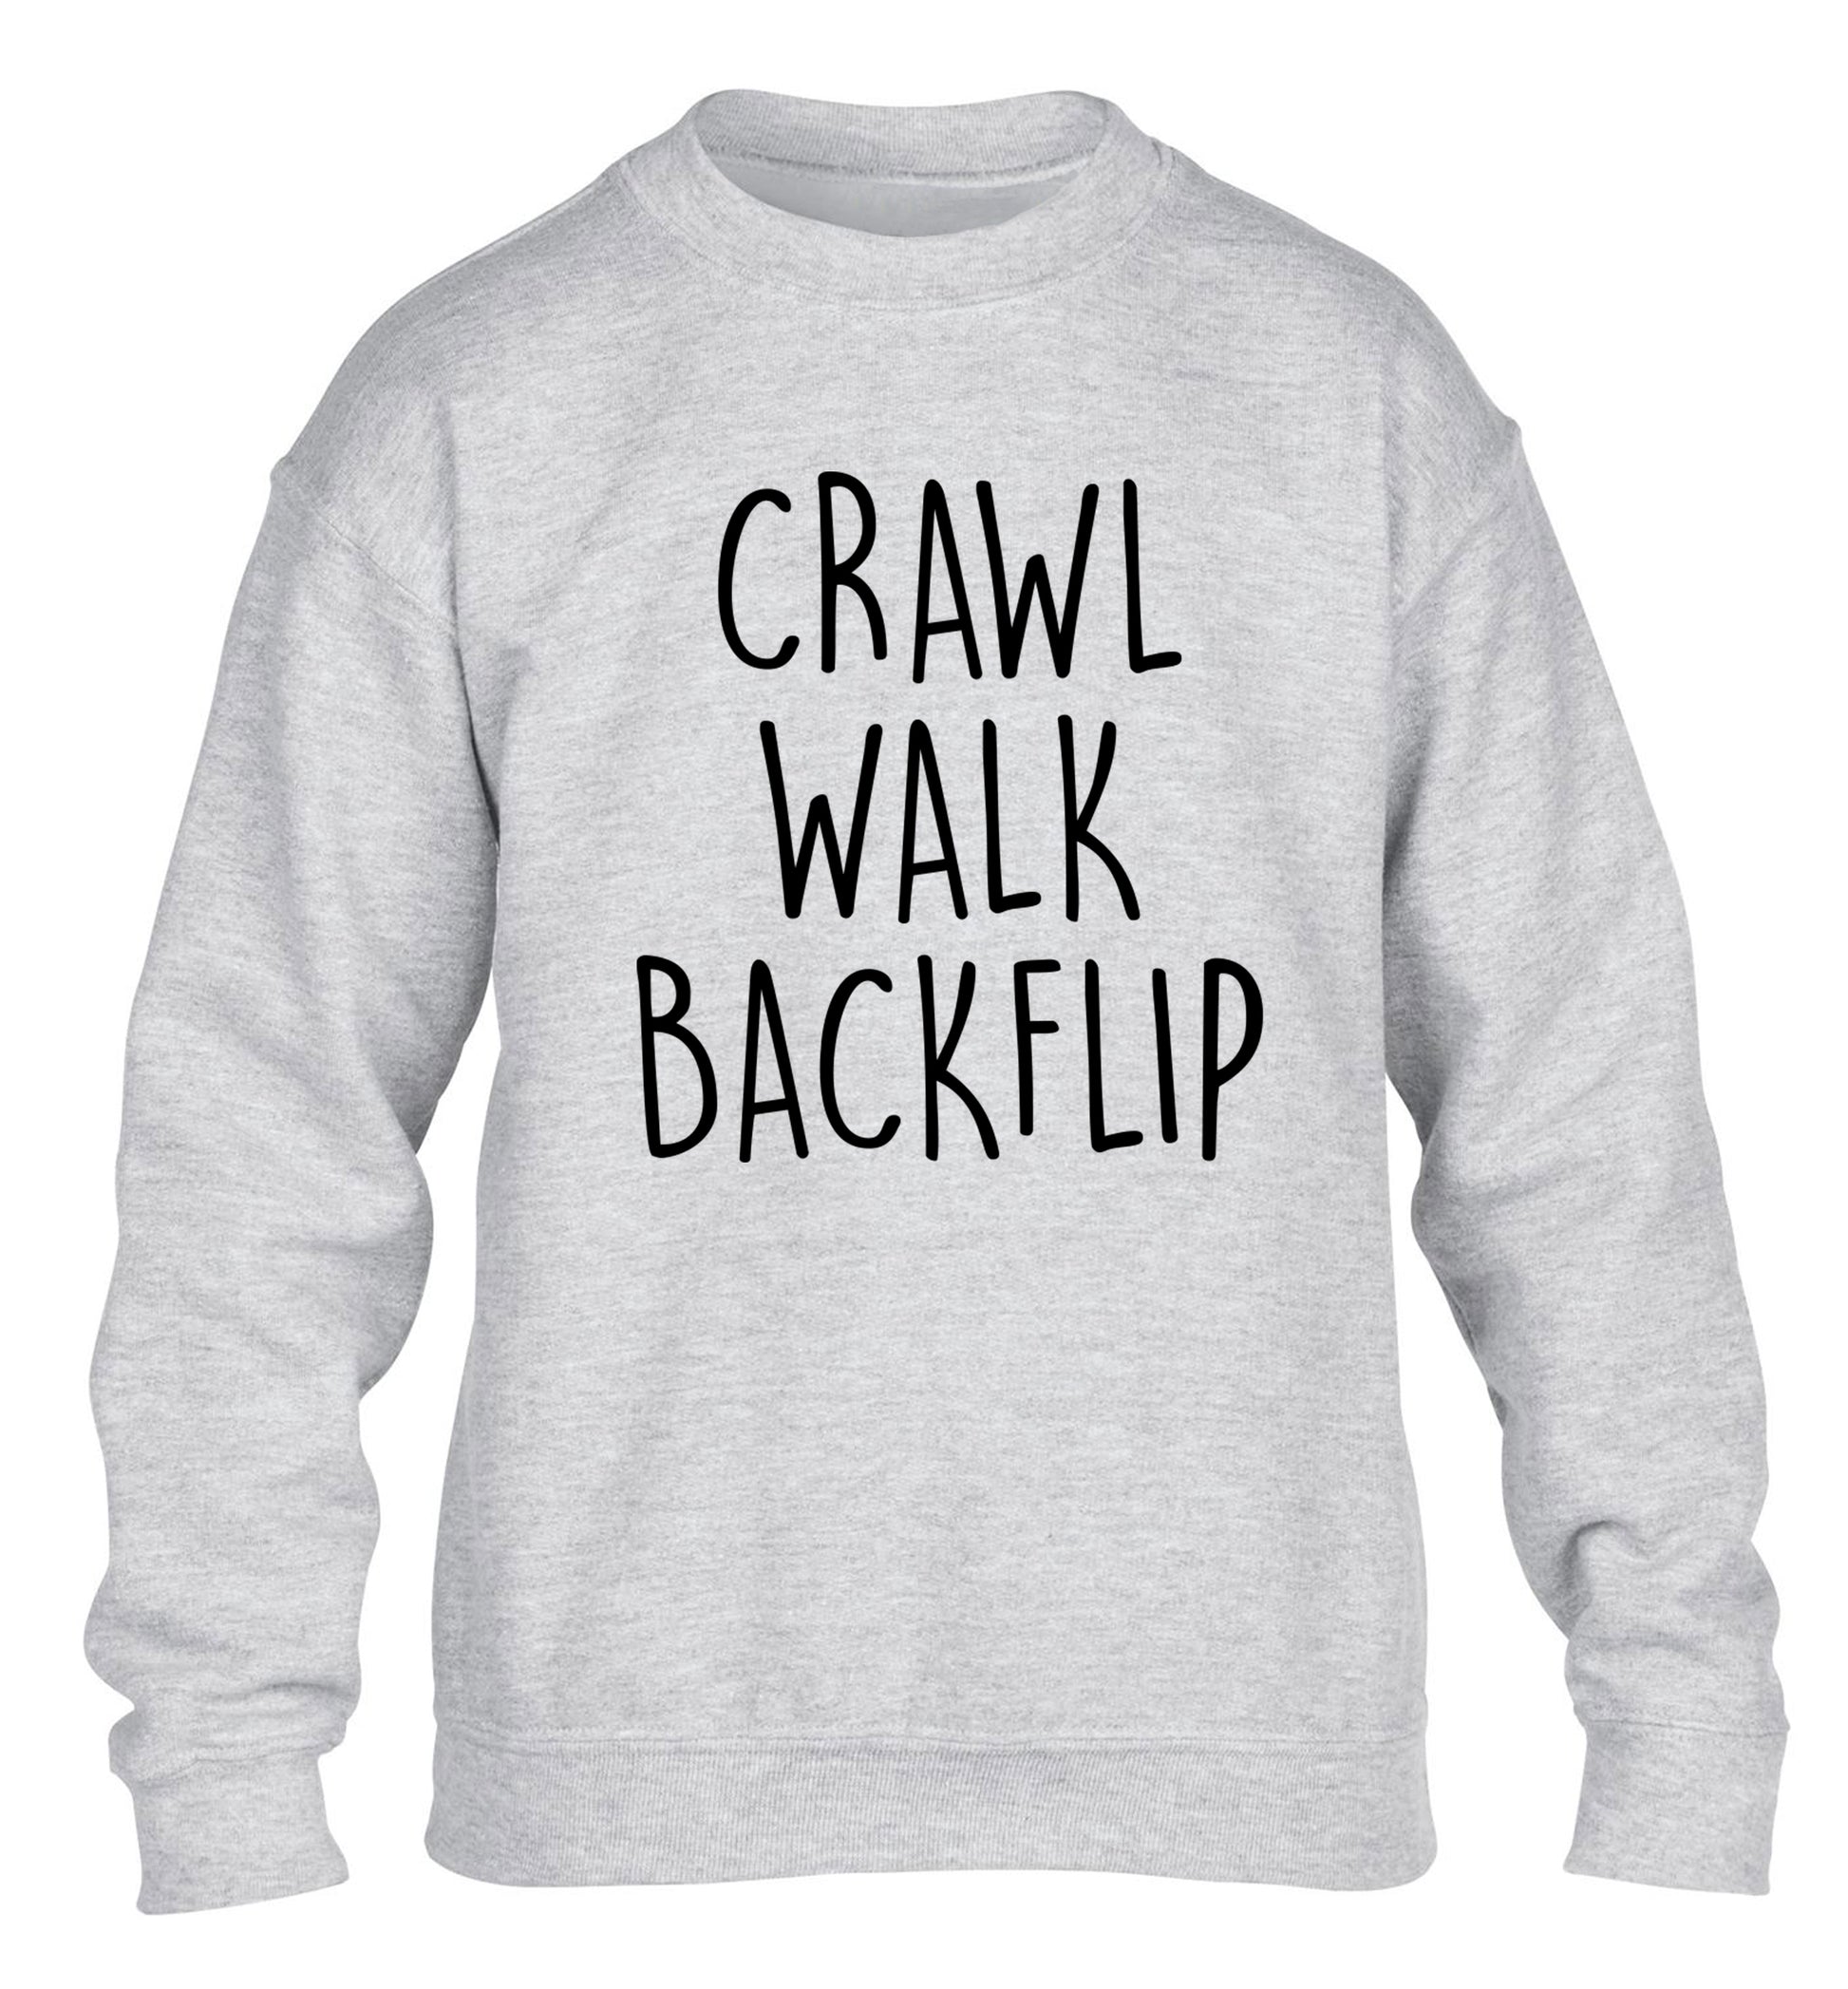 Crawl Walk Backflip children's grey sweater 12-13 Years